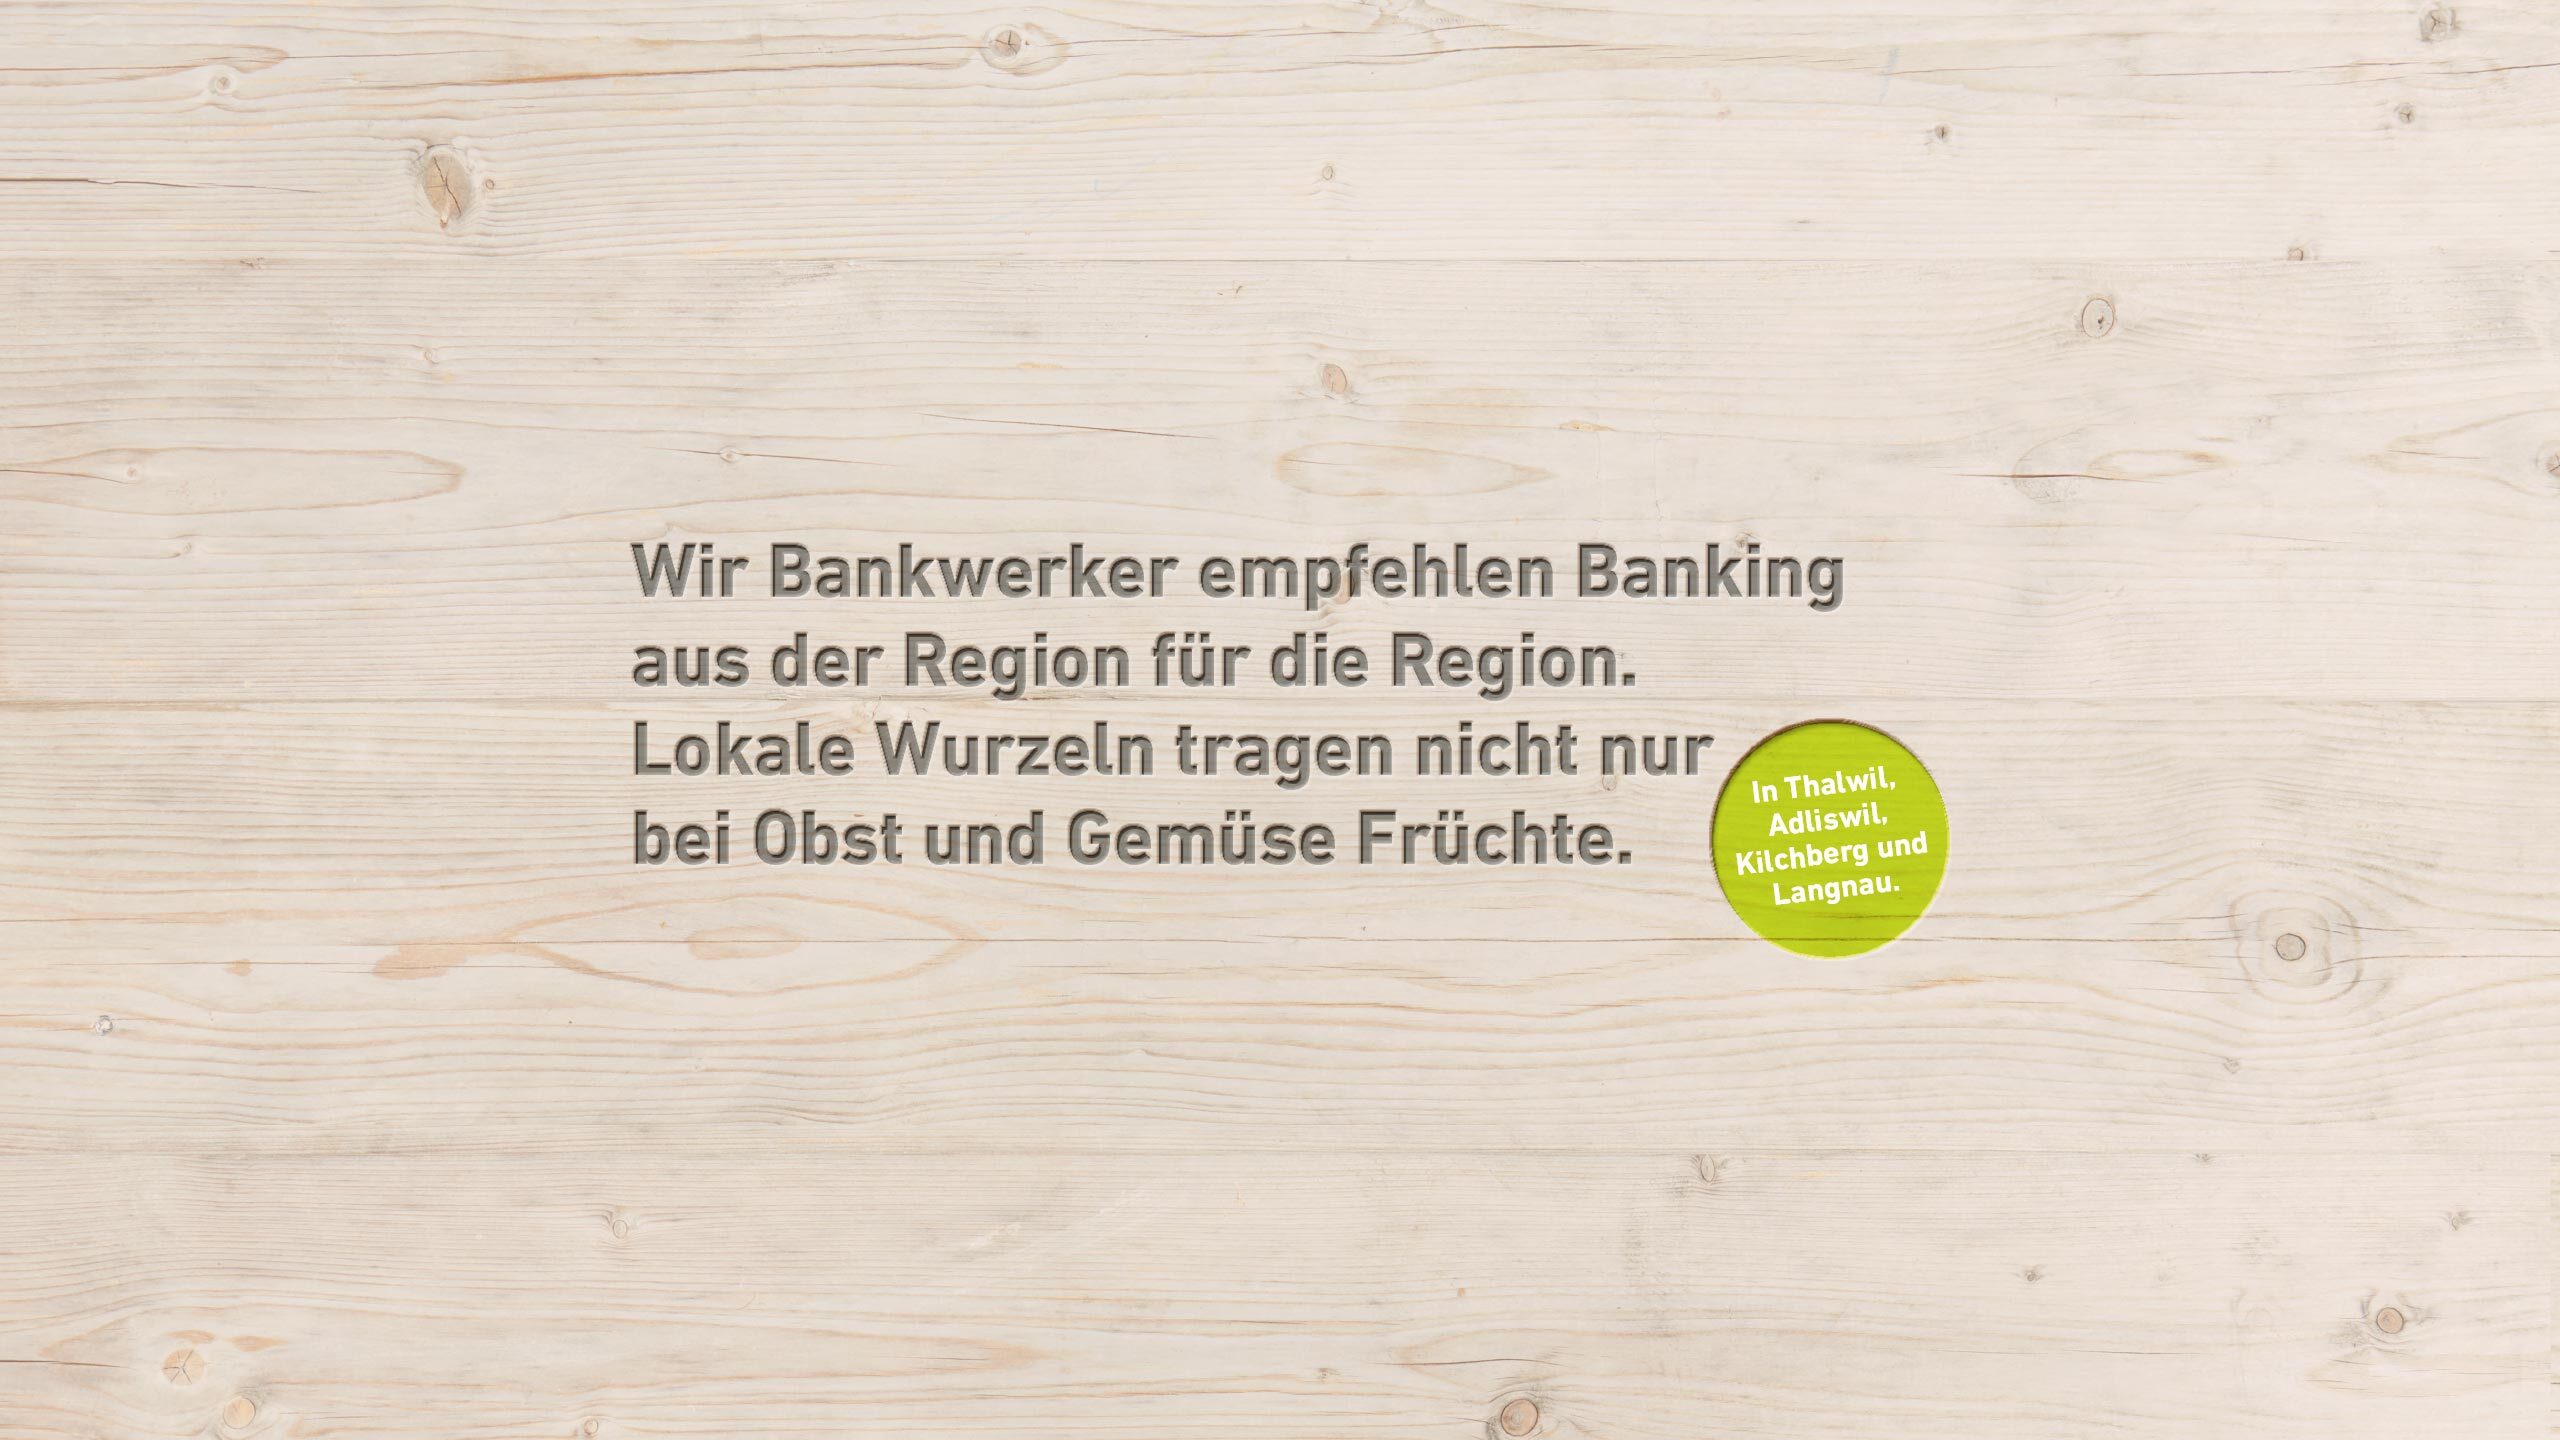 Wir Bankwerker empfehlen Banking aus der Region für die Region